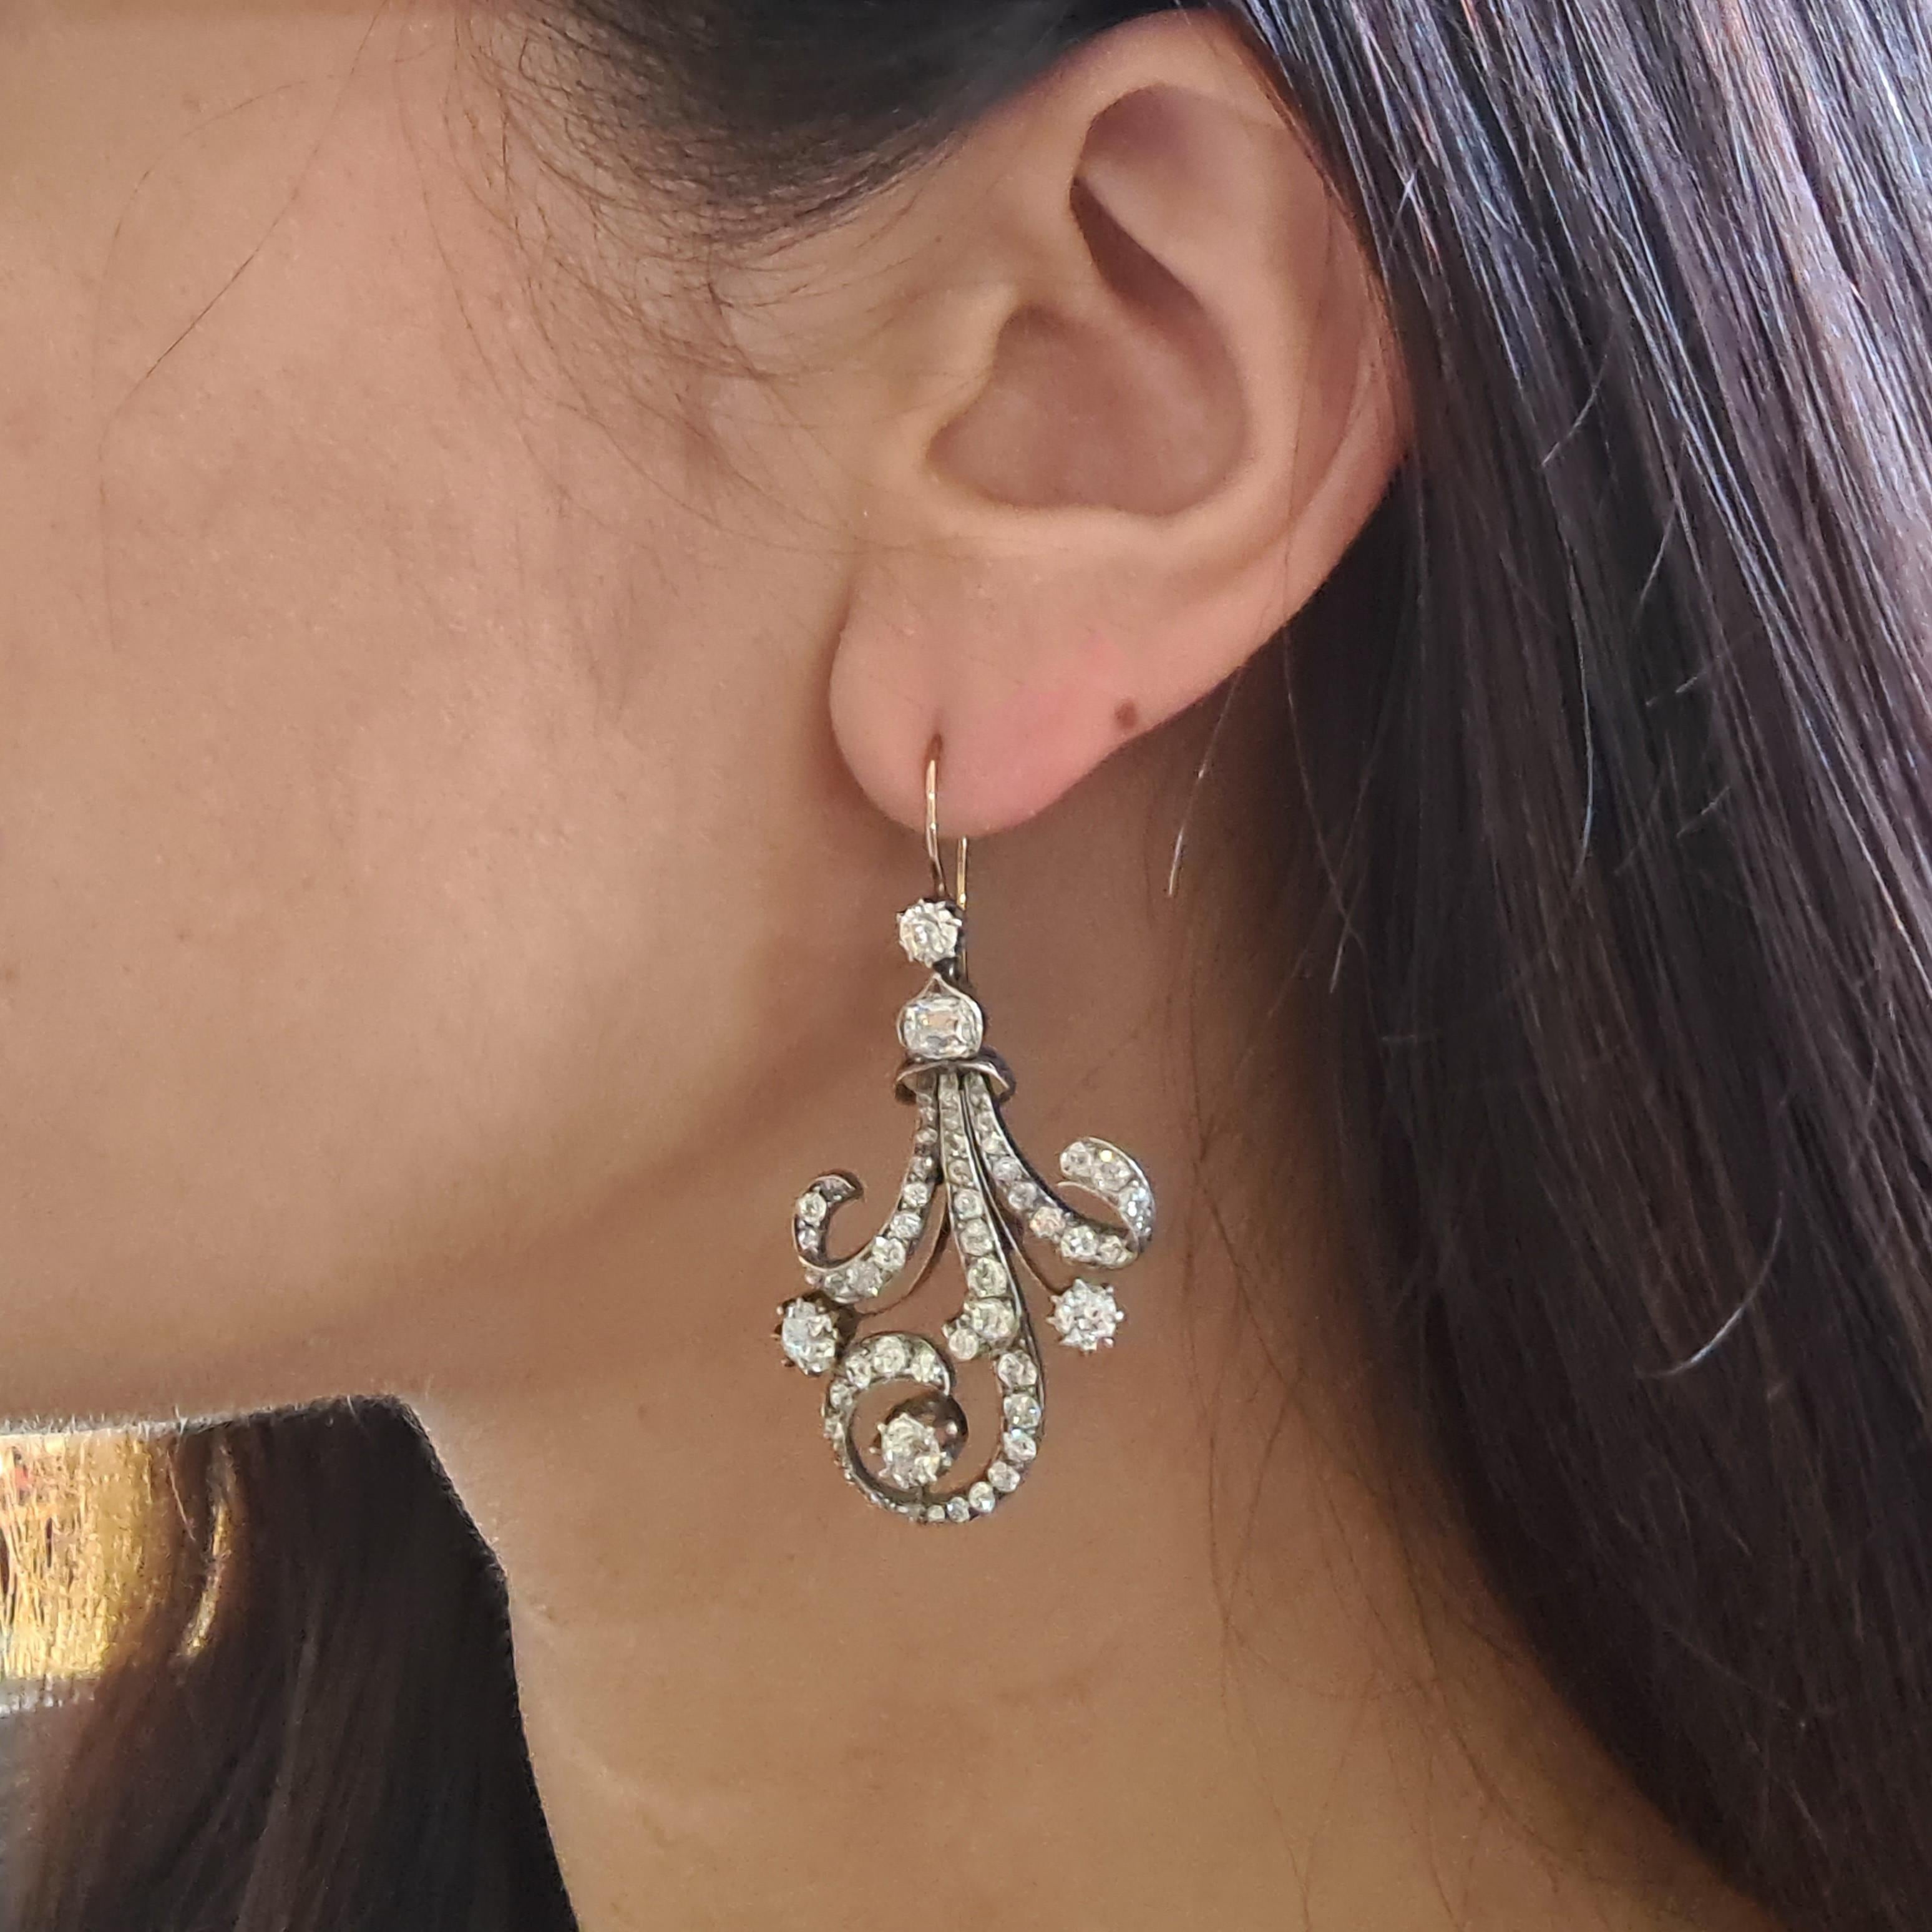 1890 earrings